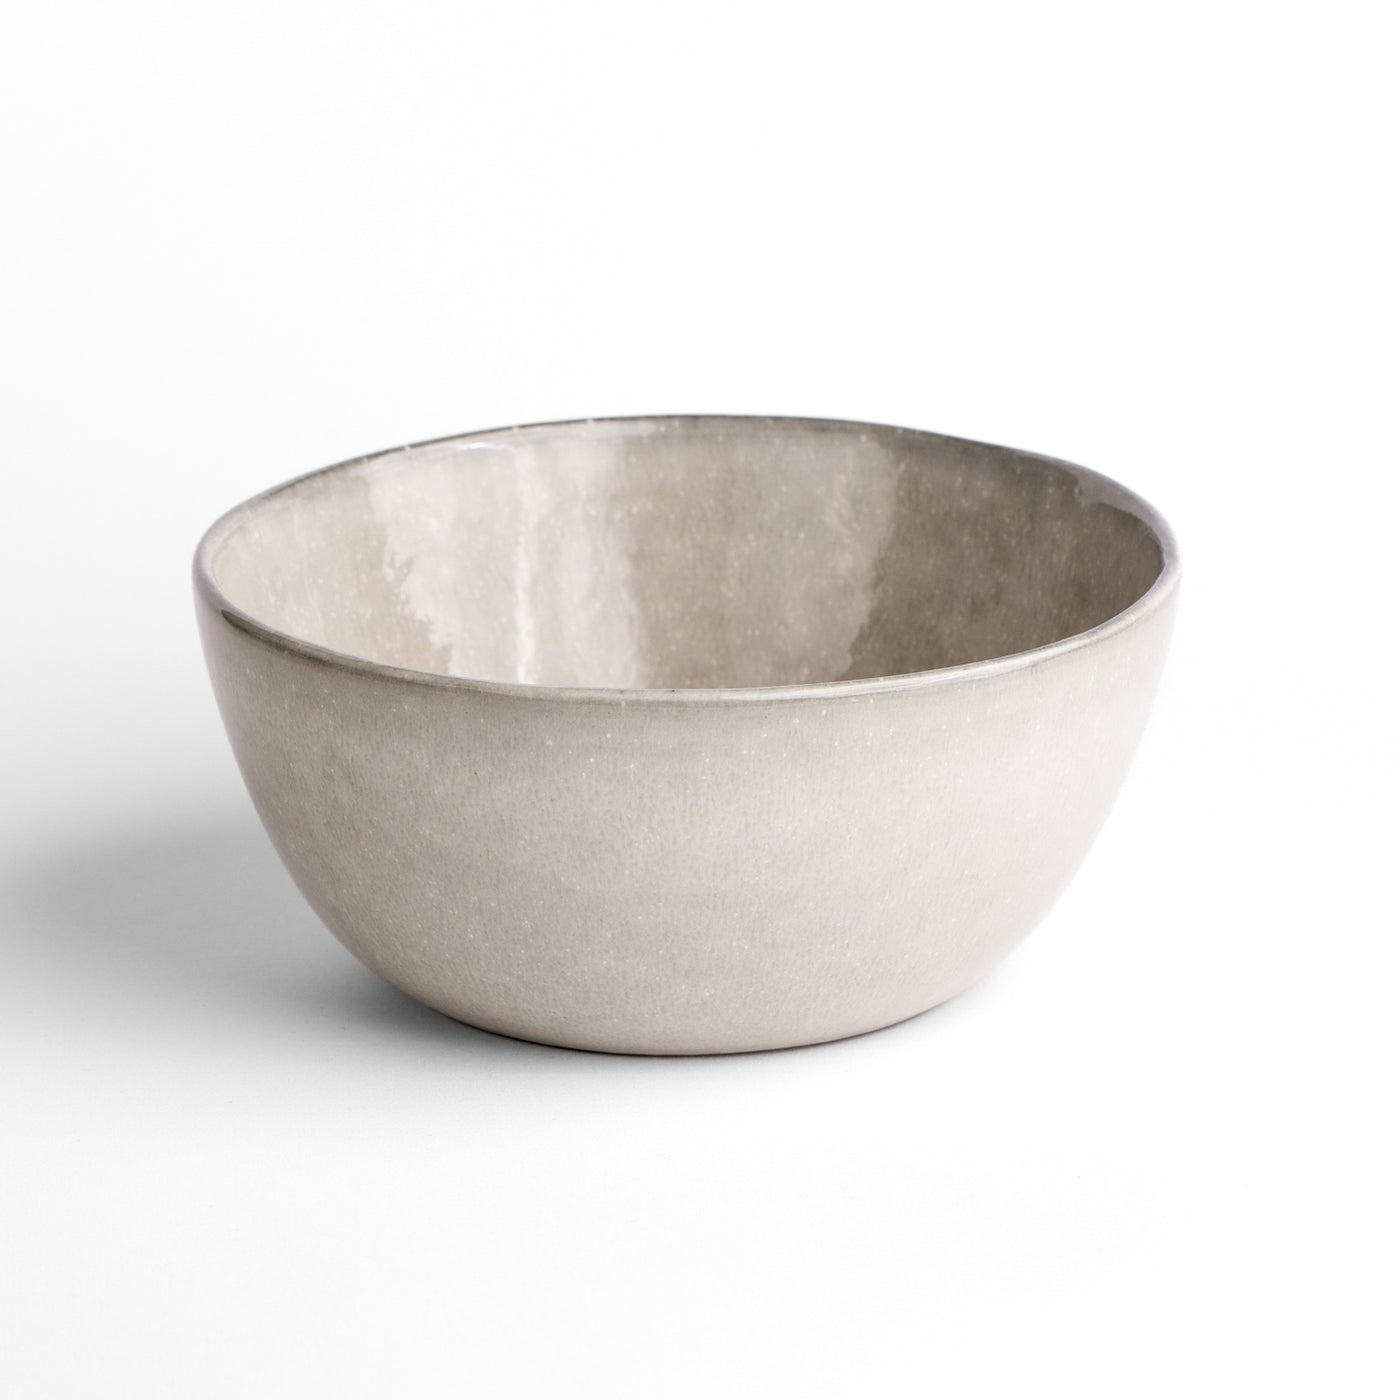 Hauptspeisen Bowl für Poke oder Curries in rekativer grauer Glasur